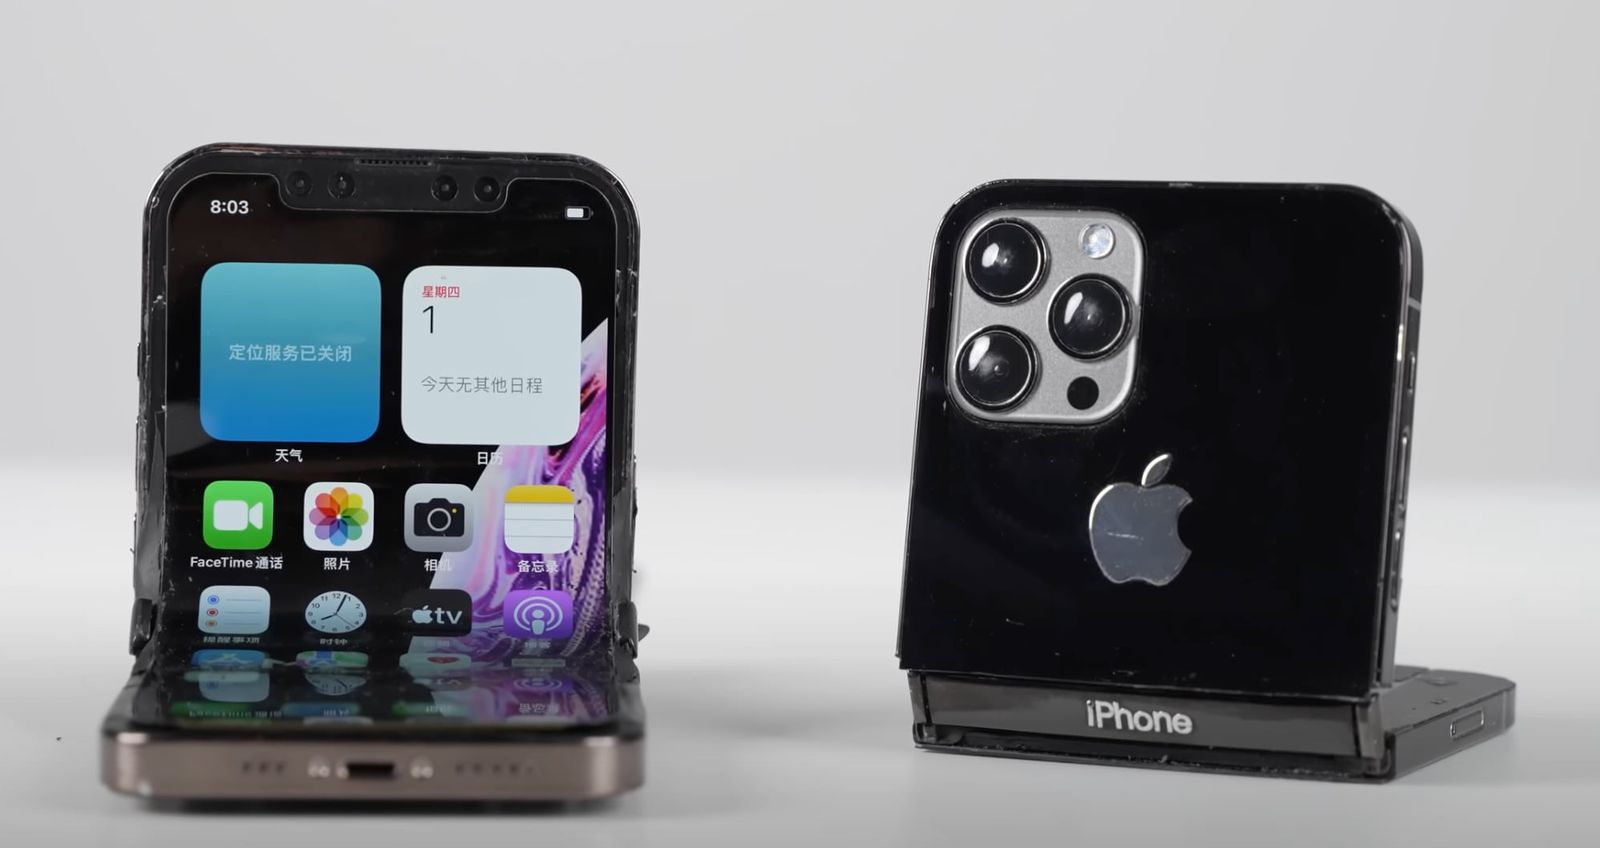 Plotka: Apple wstrzymuje prace nad składanymi iPhone'ami - elastyczne wyświetlacze nie przeszły testów